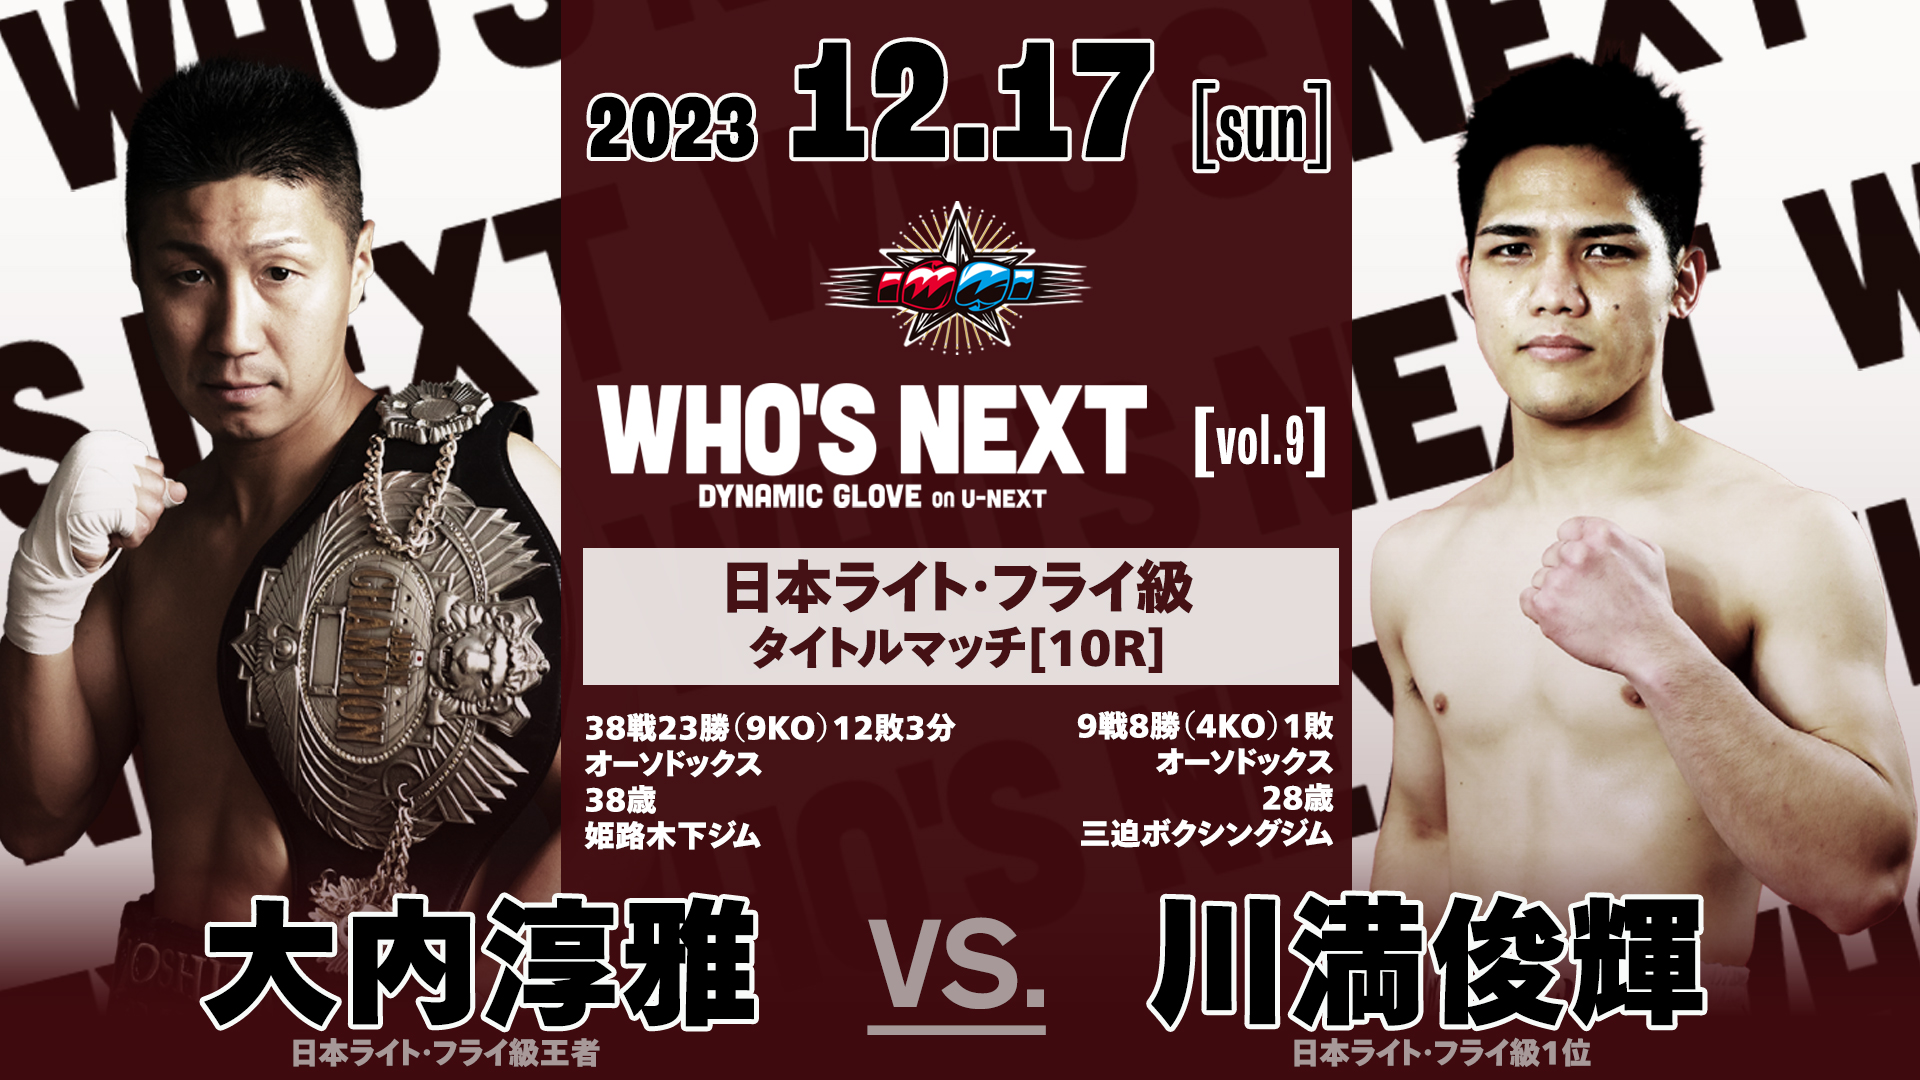 関西で開催されるボクシング「第9回WHO'S NEXT」の見どころを一挙に 